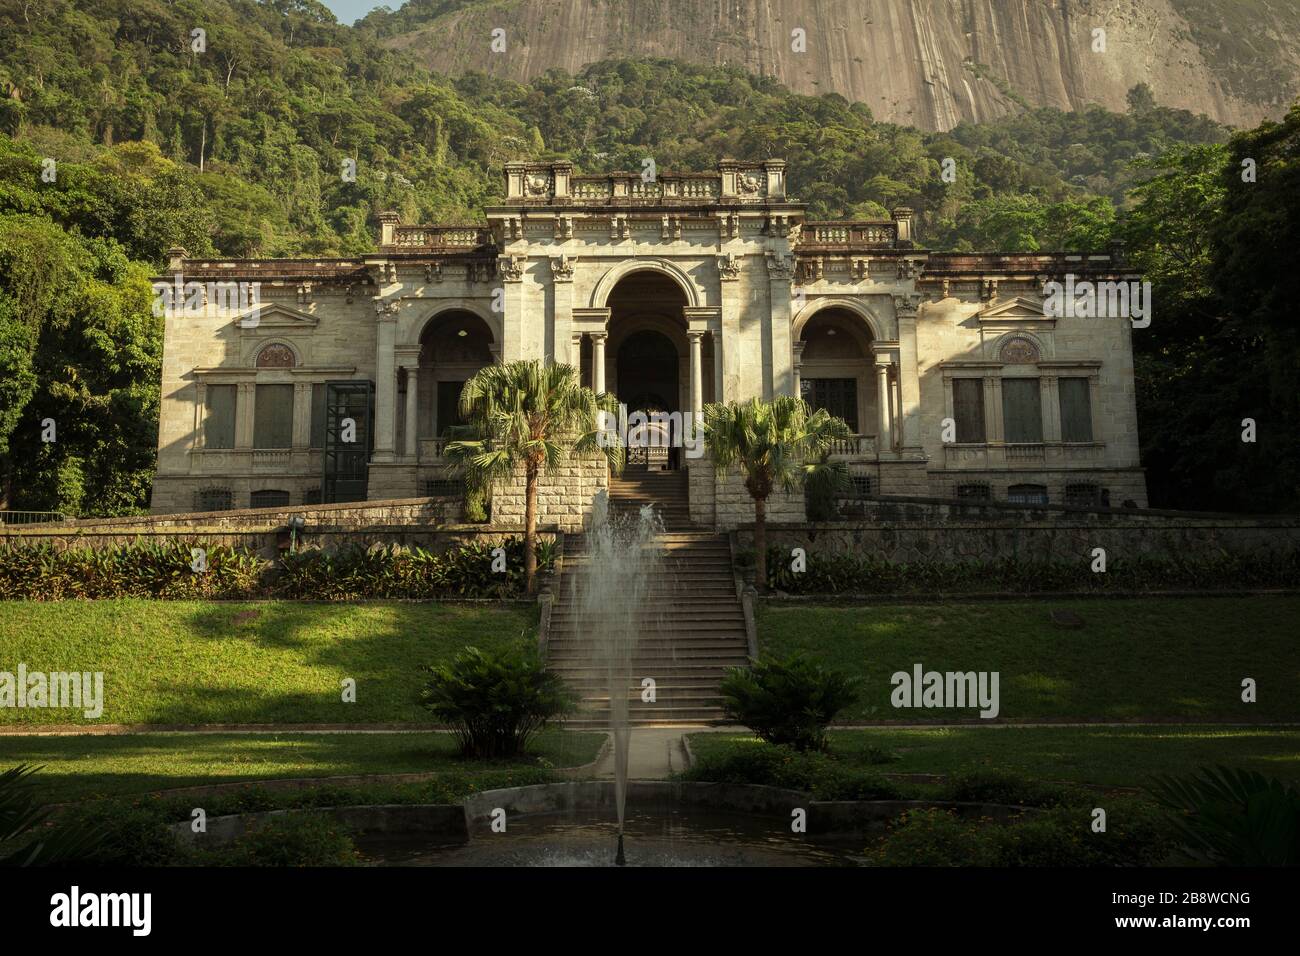 Rio de Janeiro, Brazil - December 12, 2017: Parque Enrique Lage in Rio de Janeiro city, Brazil Stock Photo